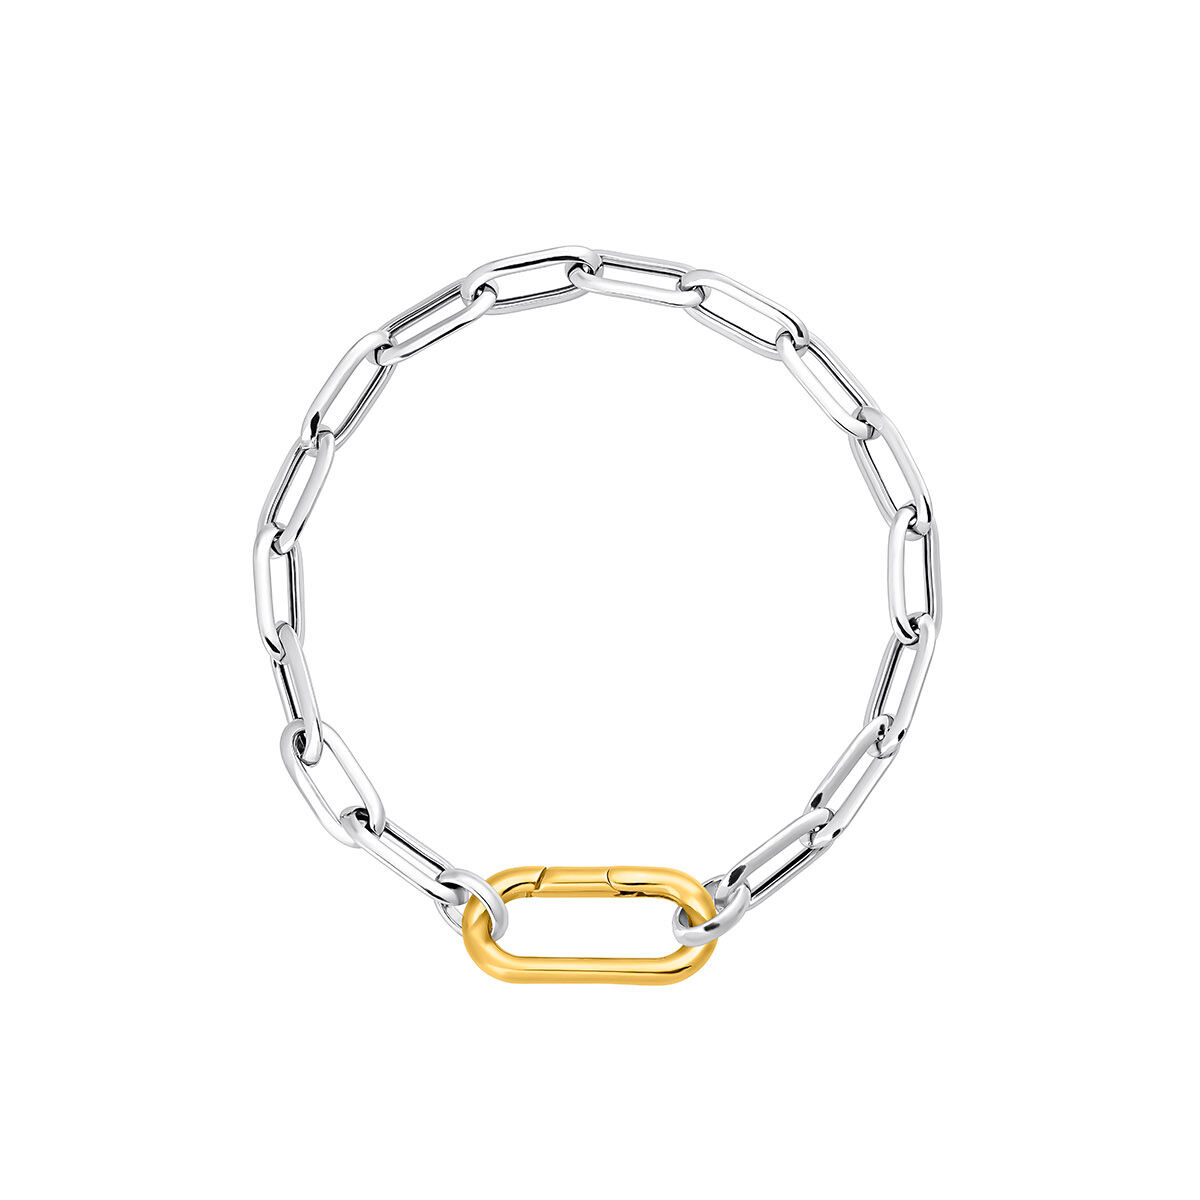 Bracelet à chaîne avec une maille forçat rectangulaire en argent , J05340-01-19, hi-res